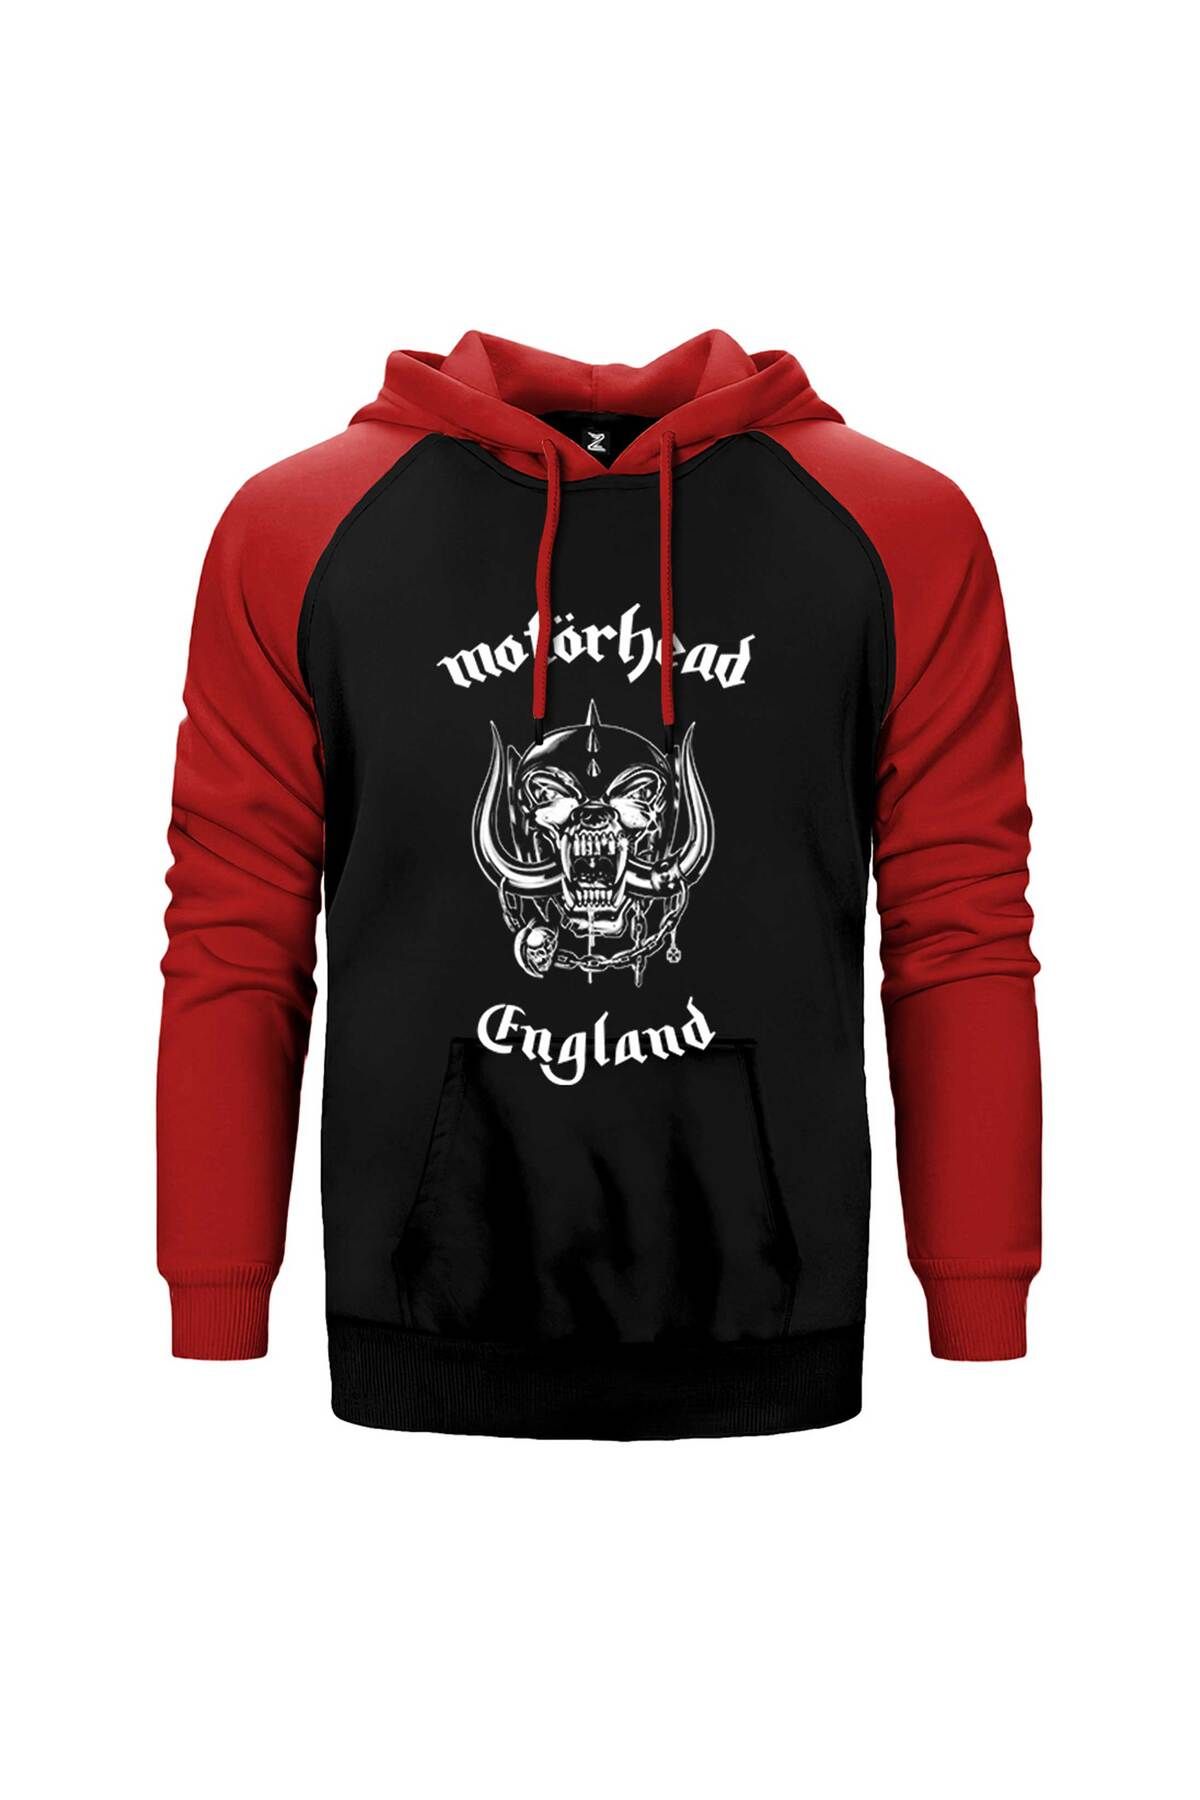 Z zepplin Motörhead England Kırmızı Renk Reglan Kol Kapşonlu Sweatshirt